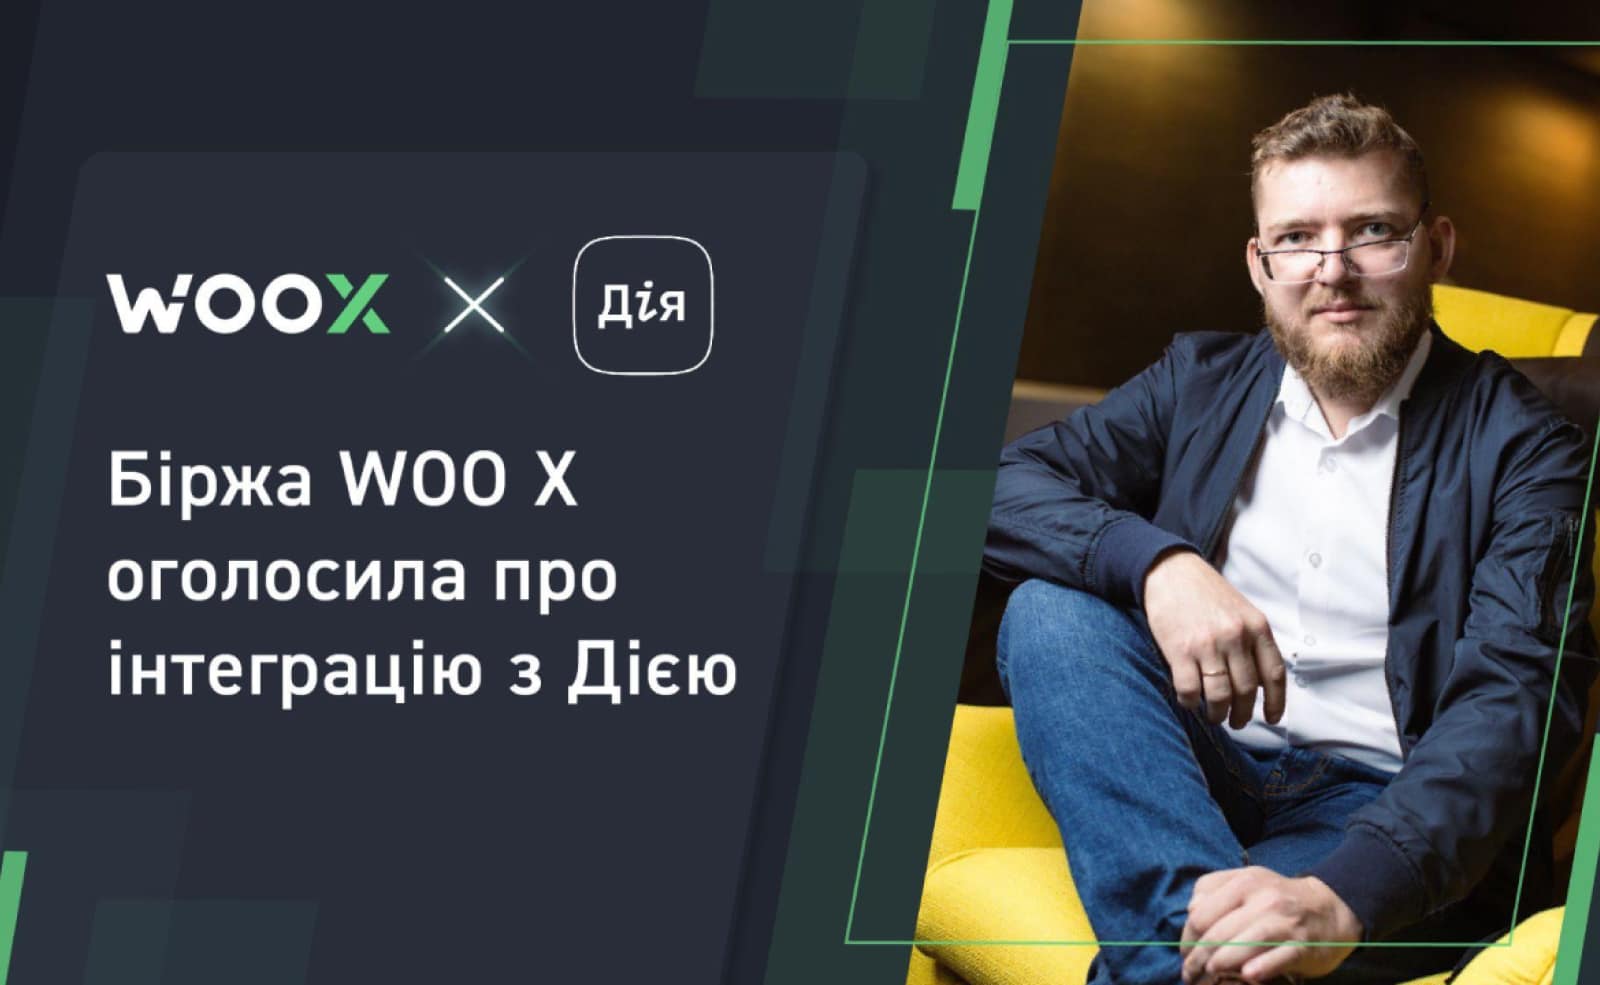 Роман Проскуренко - голова операційної команди WOO X в Україні